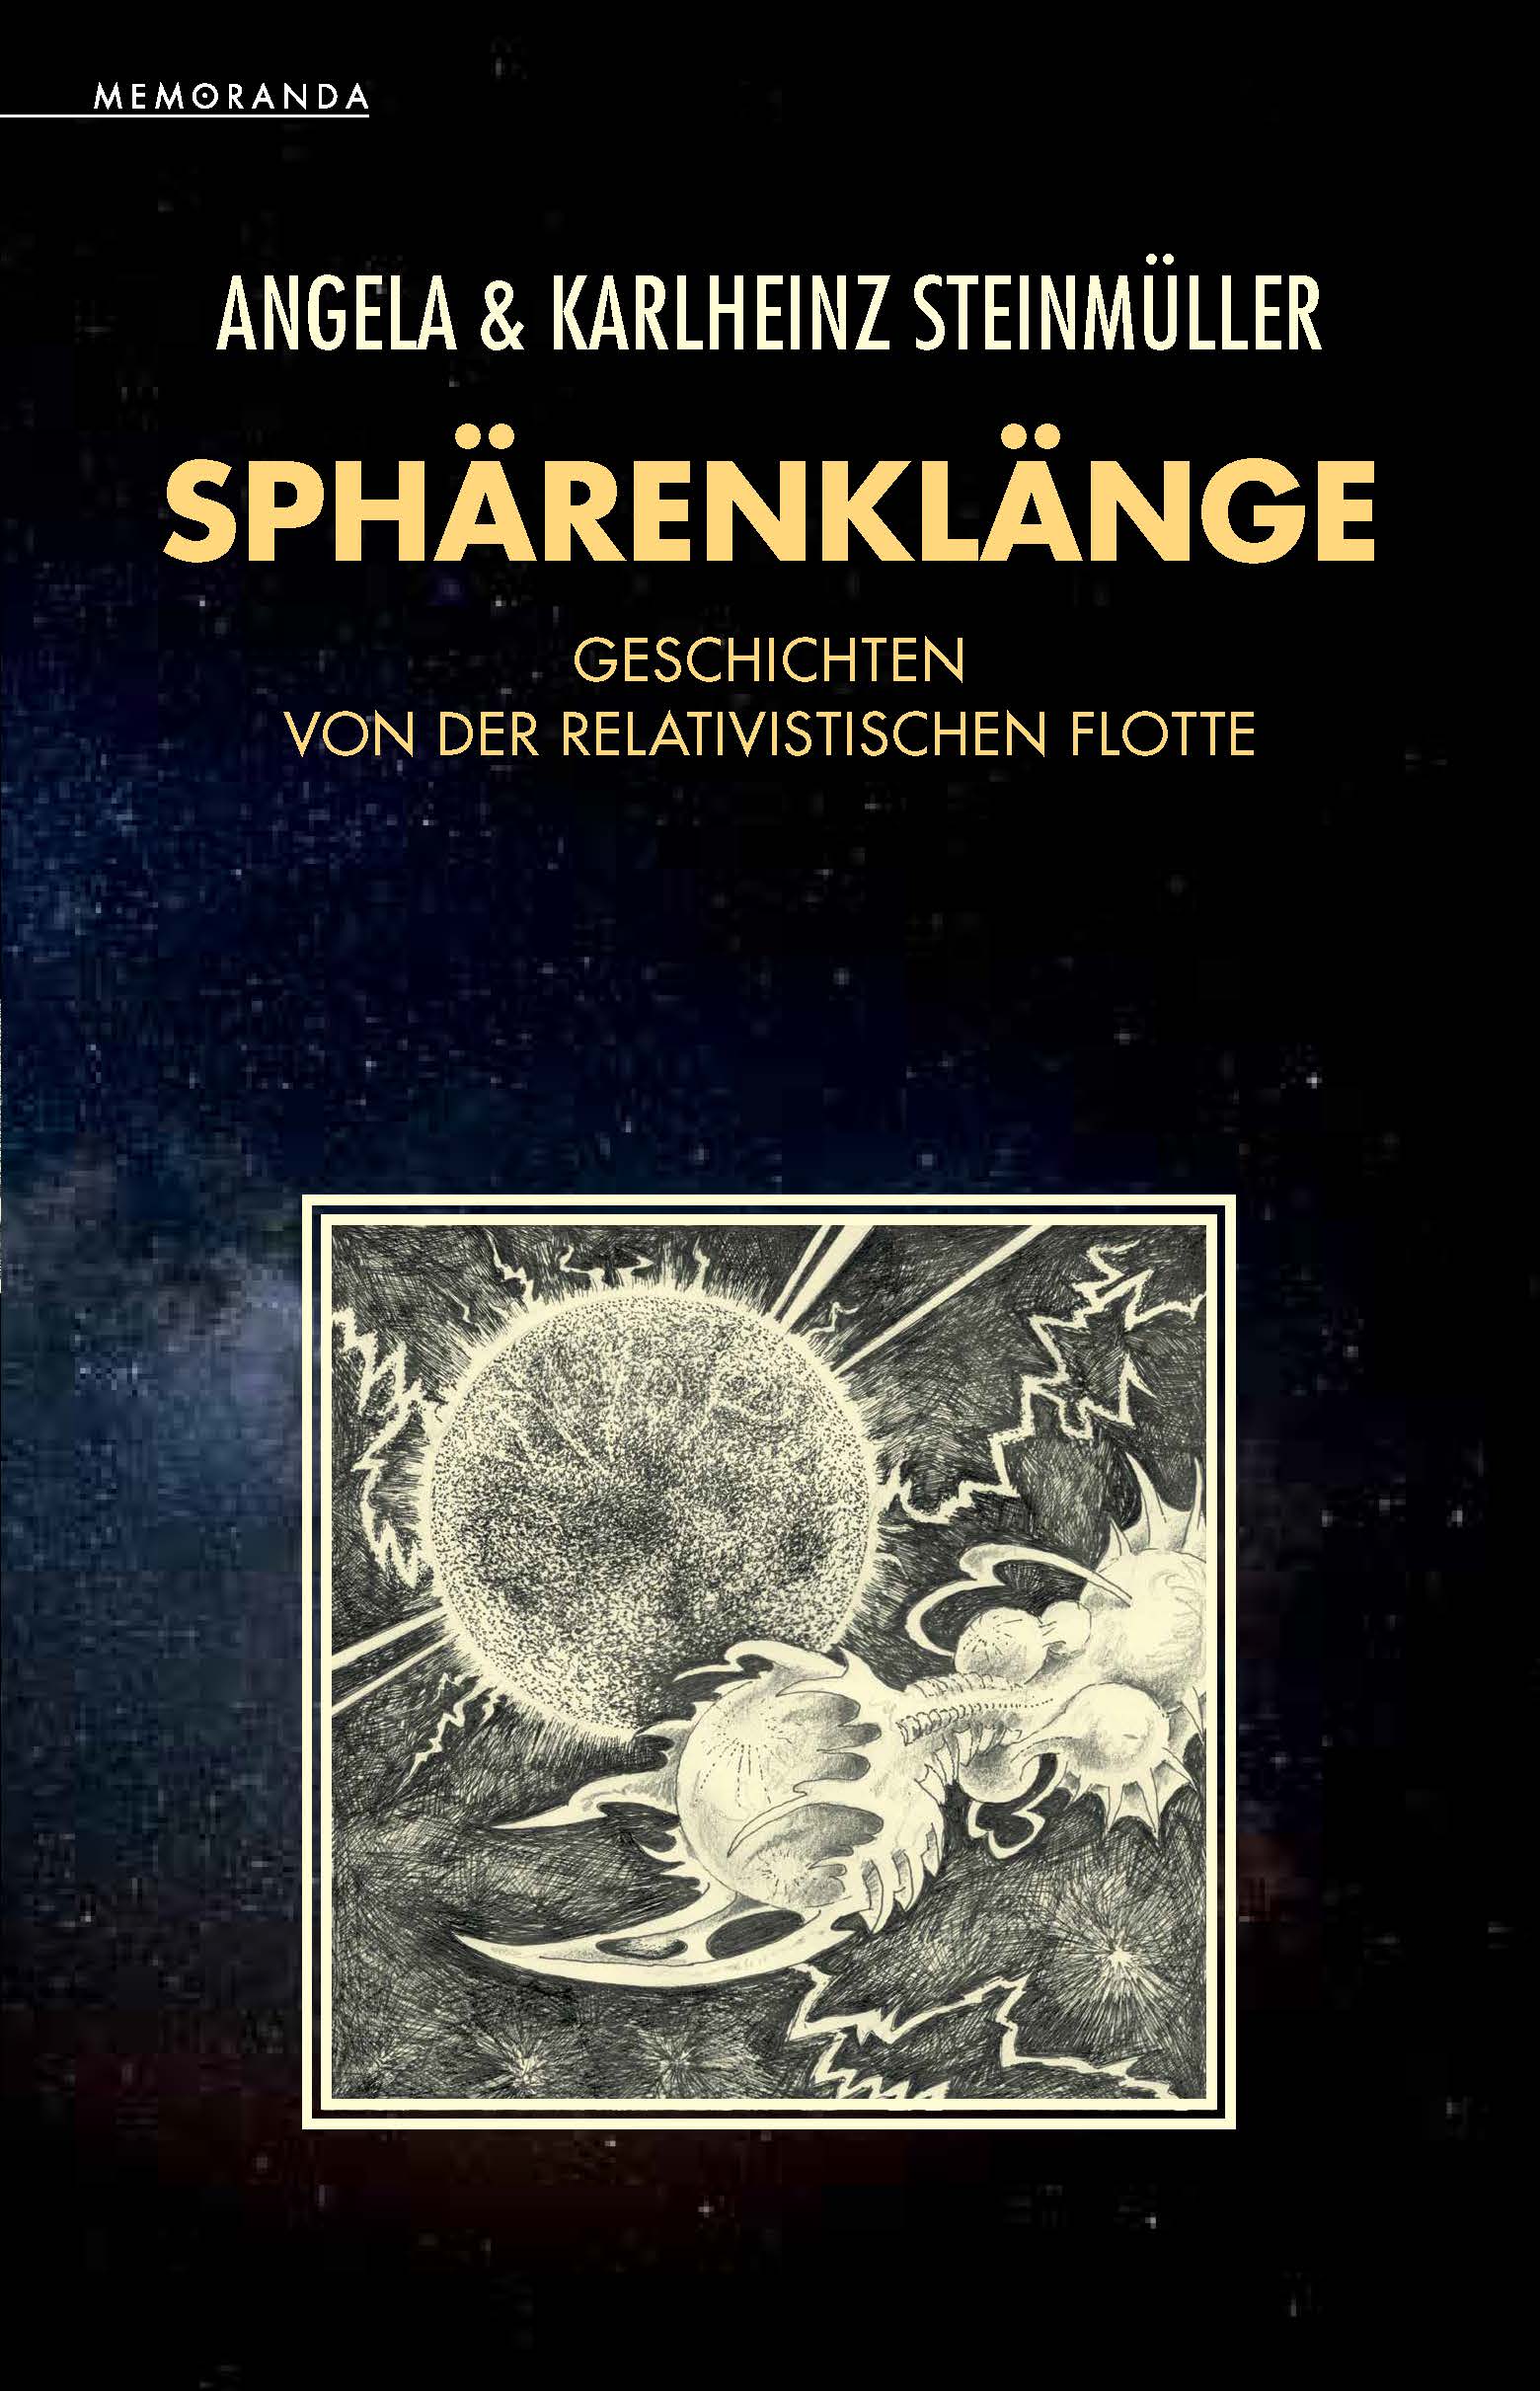 "Sphärenklänge" von Angela & Karlheinz Steinmüller